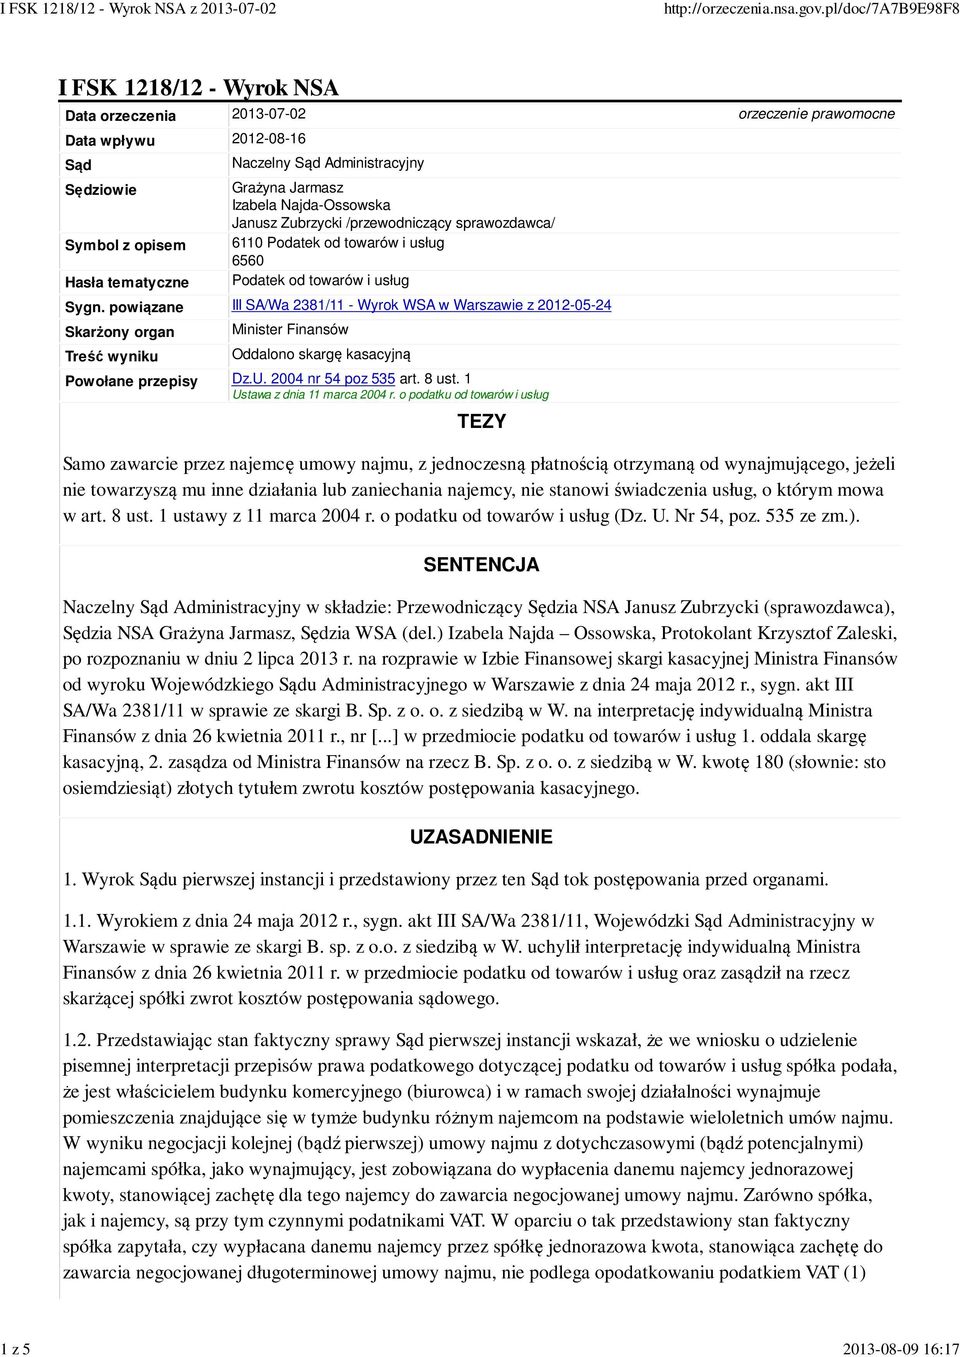 powiązane III SA/Wa 2381/11 - Wyrok WSA w Warszawie z 2012-05-24 Skarżony organ Treść wyniku Minister Finansów Oddalono skargę kasacyjną Powołane przepisy Dz.U. 2004 nr 54 poz 535 art. 8 ust.